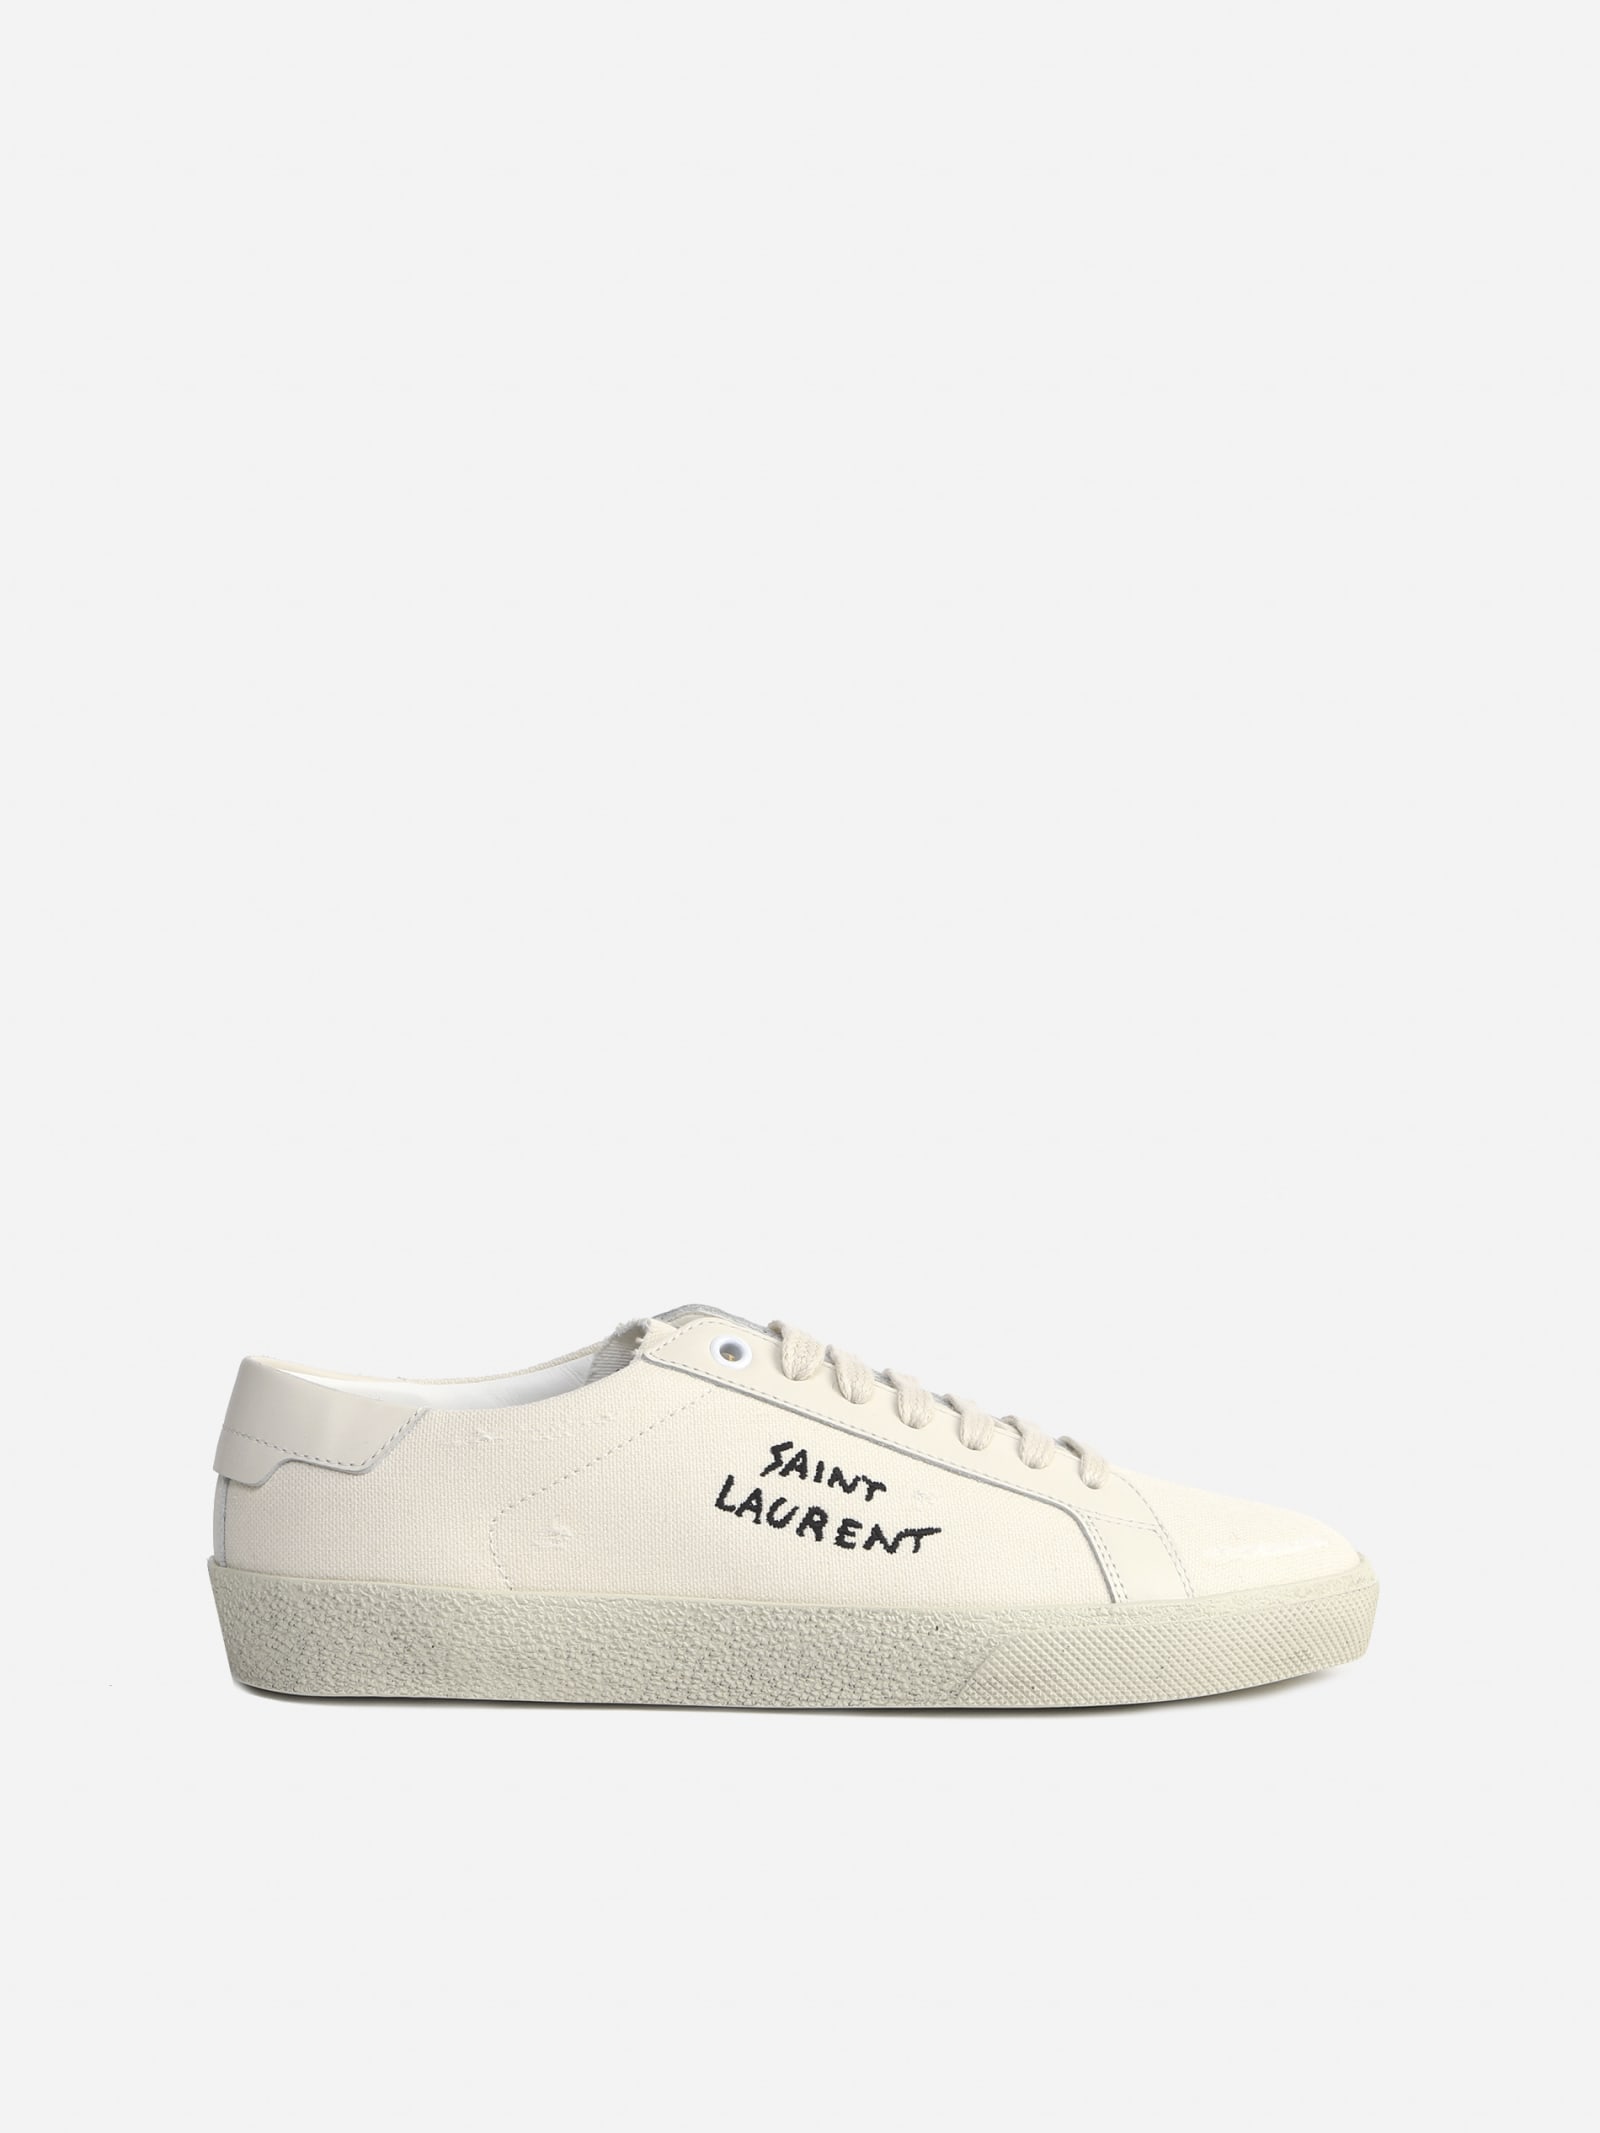 Saint Laurent Court Sl / 06 Sneakers In Cotton